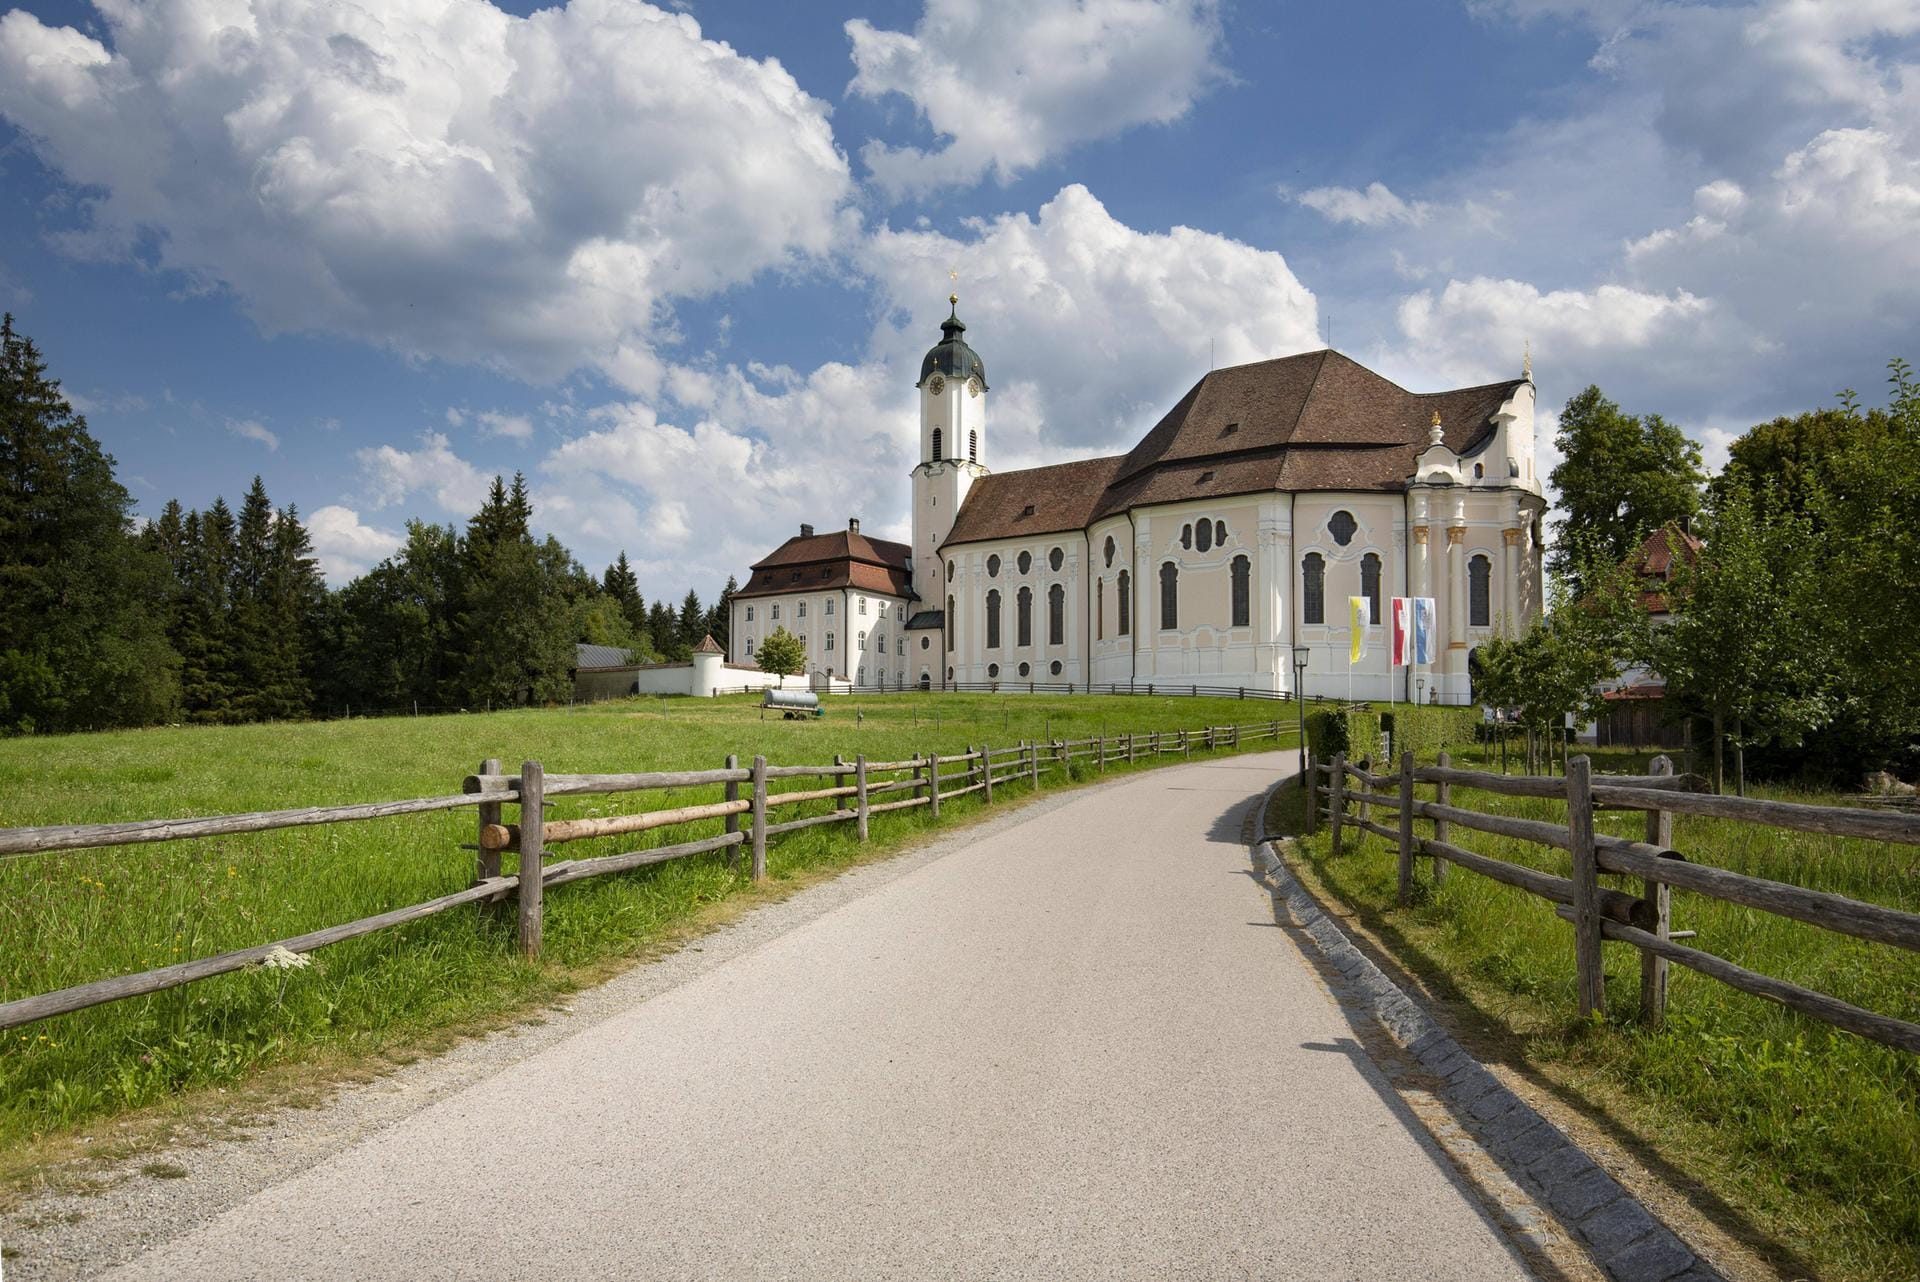 Wallfahrtskirche "Die Wies": Der vollständige Name des Gebäudes lautet "Wallfahrtskirche zum Gegeißelten Heiland auf der Wies".